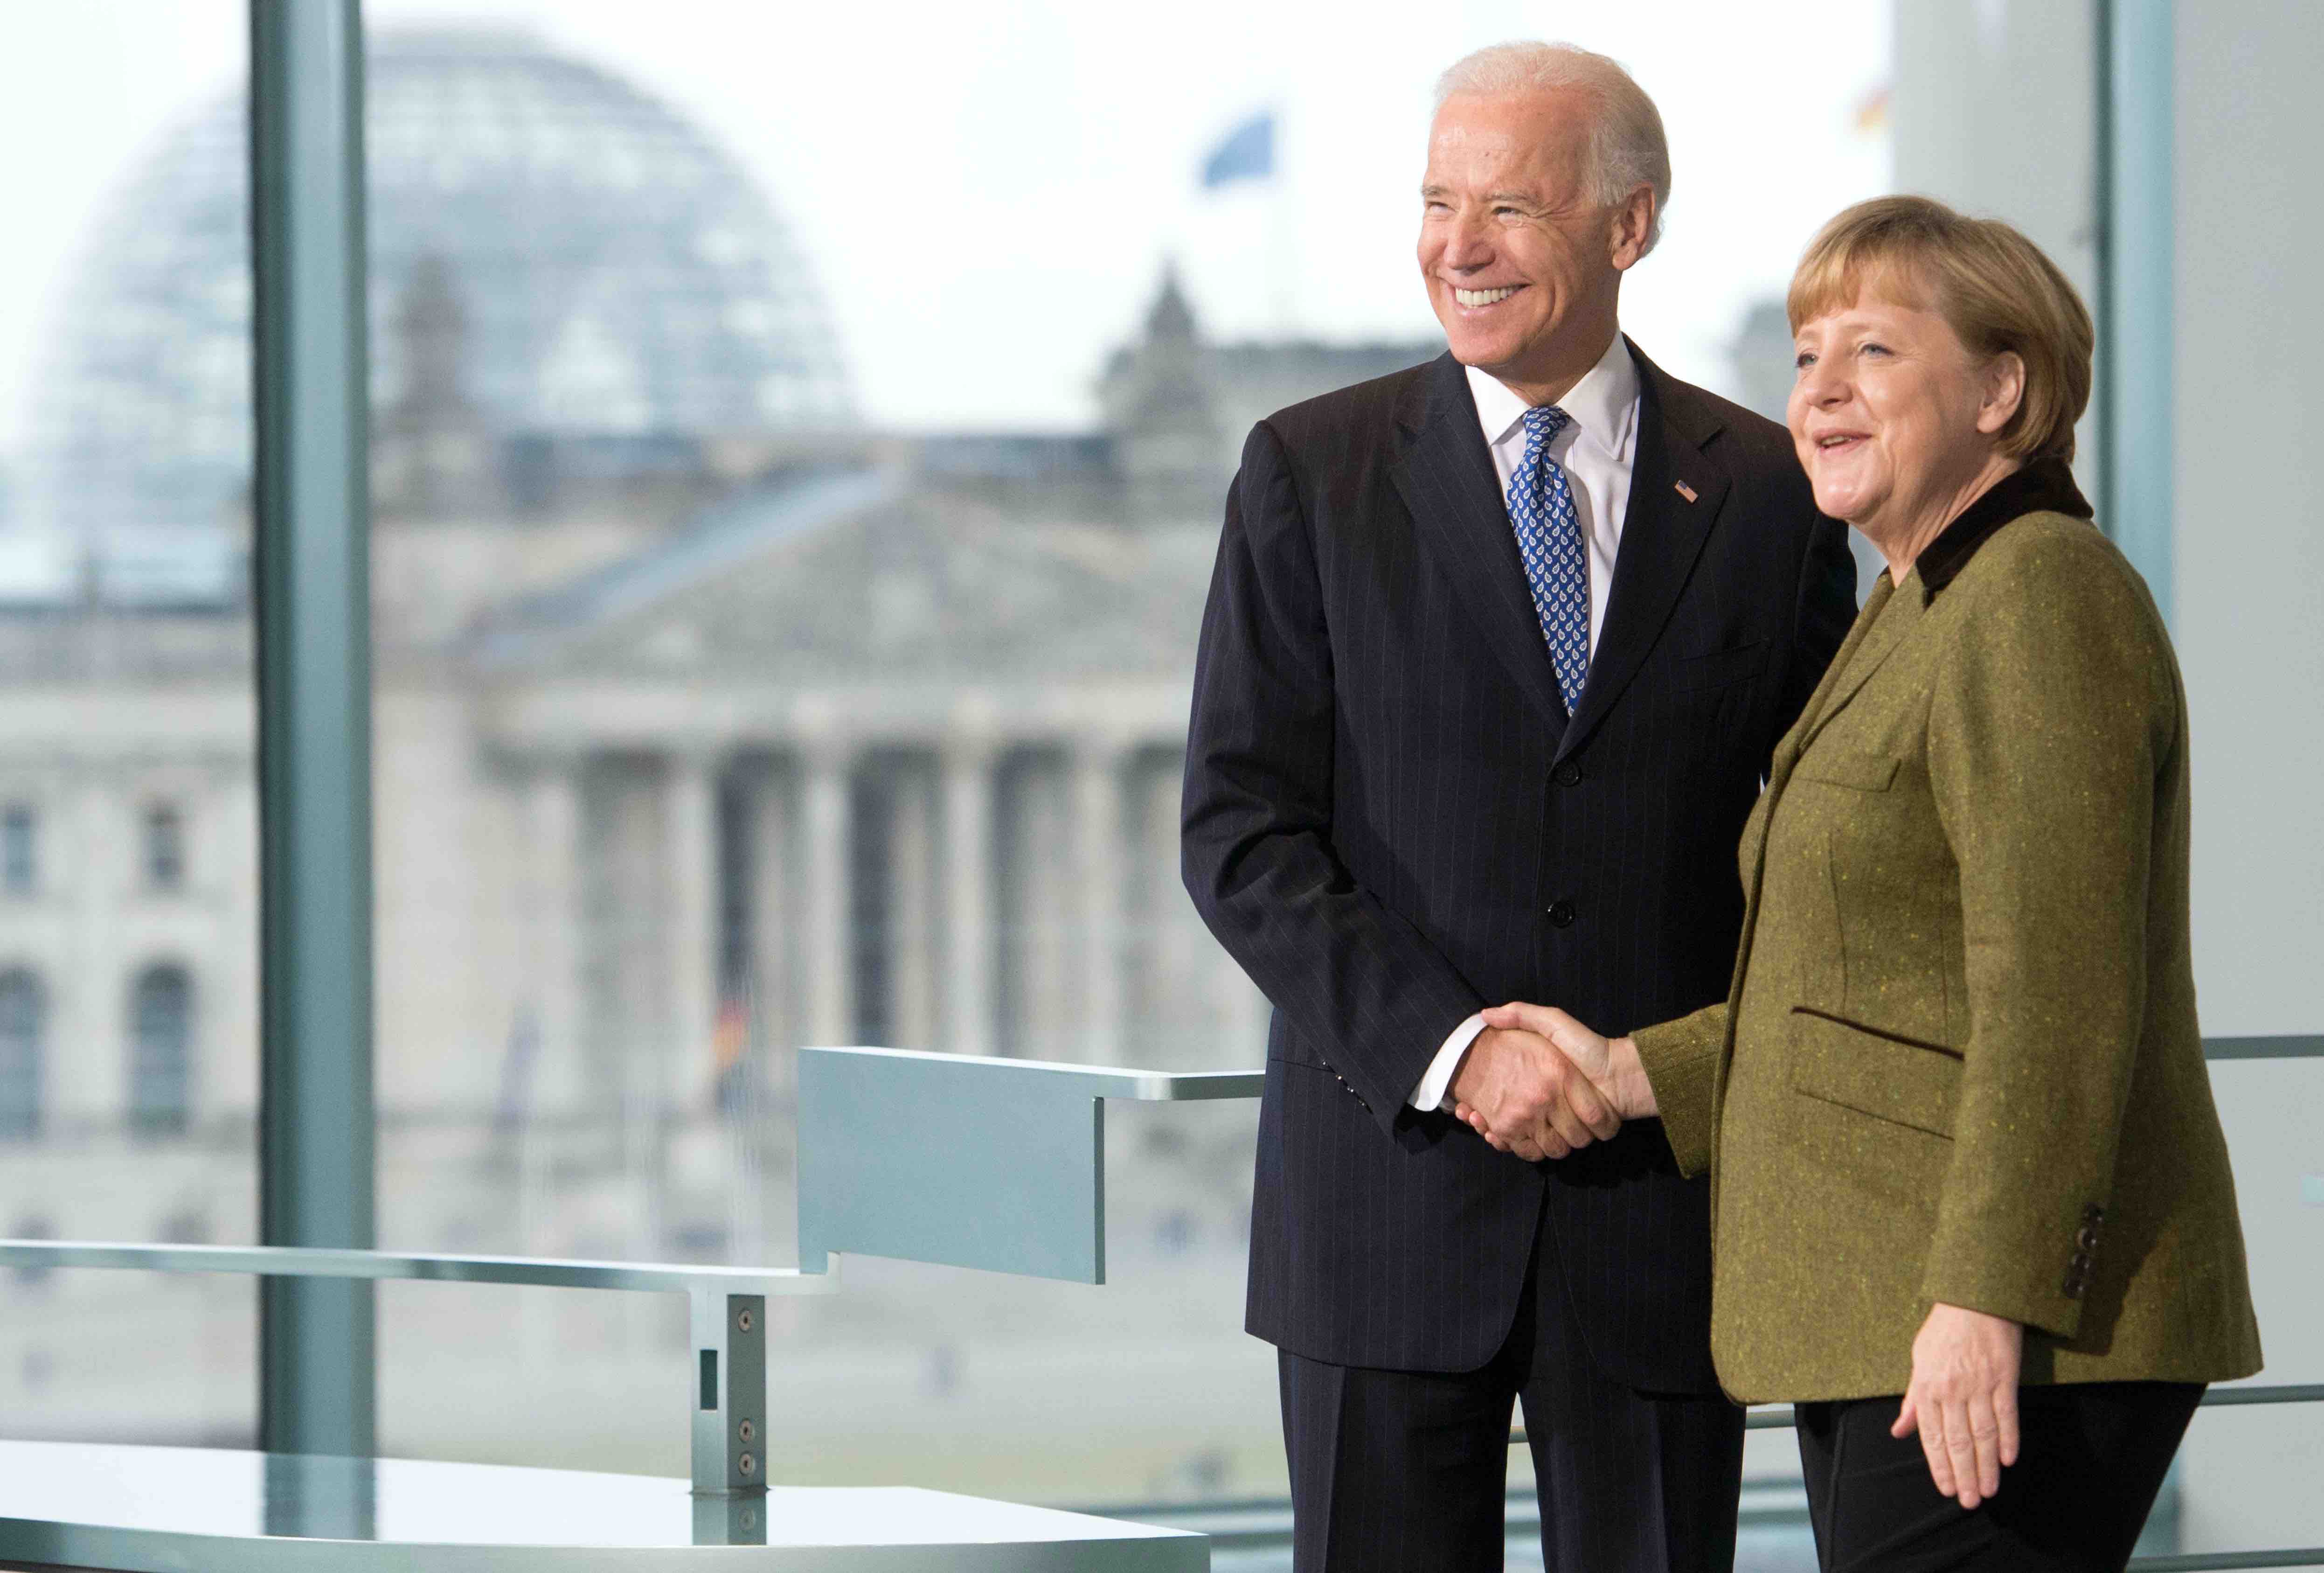 20201106-image-media pioneer-morning briefing-Merkel Biden